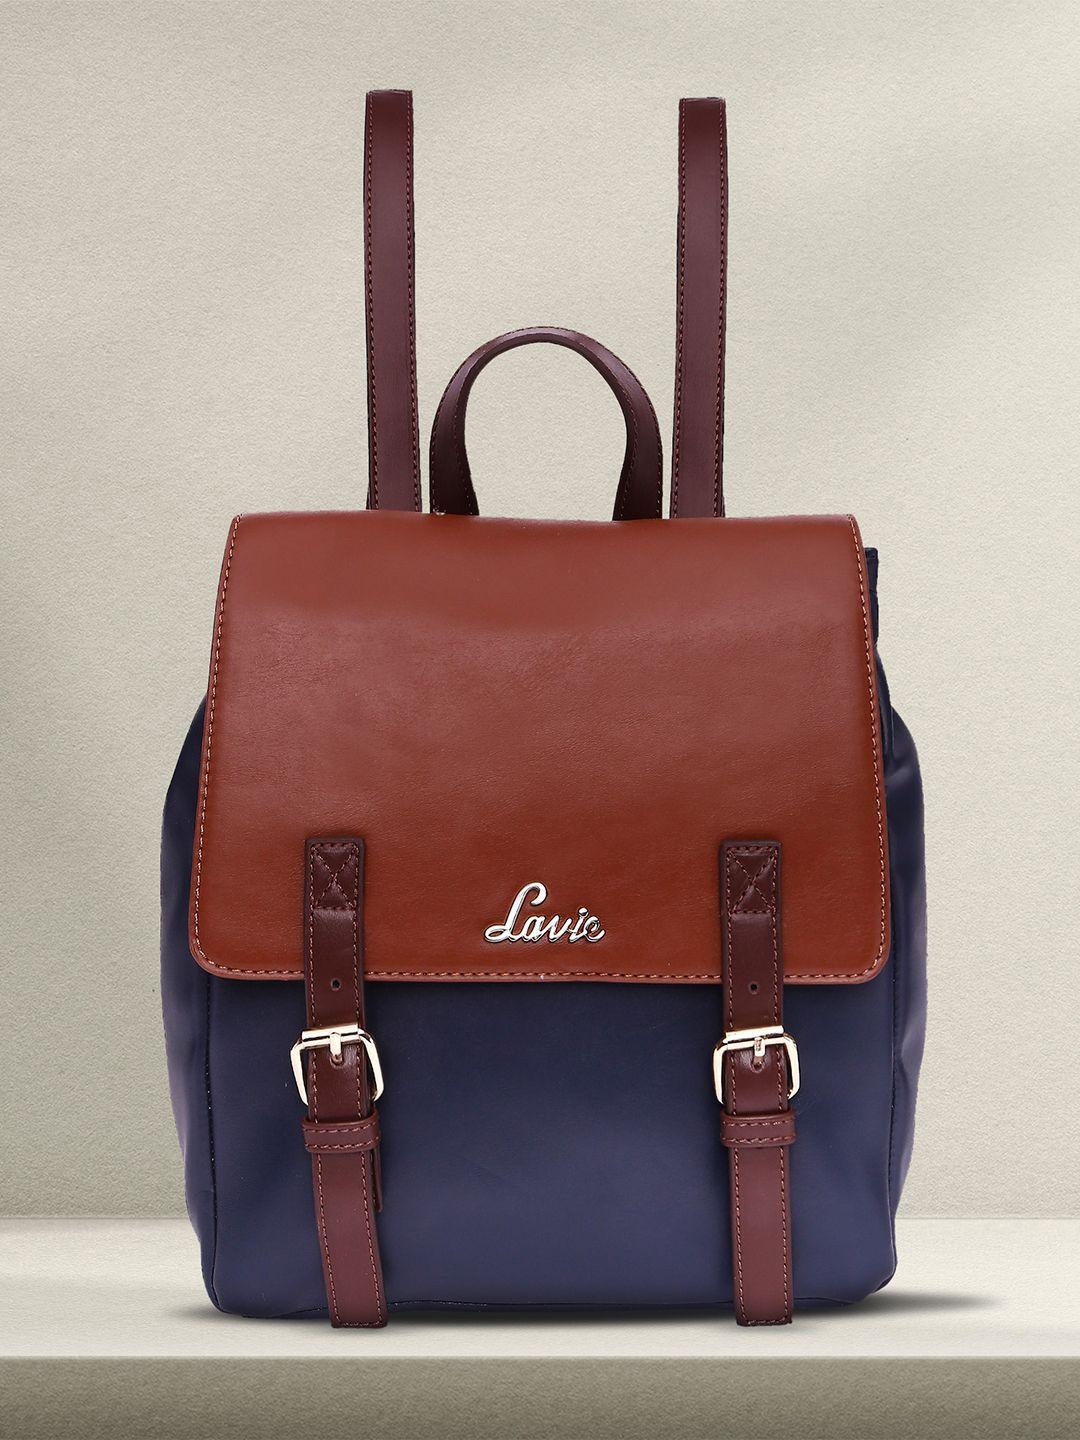 lavie-oleo-women-brown-&-navy-blue-colourblocked-backpack